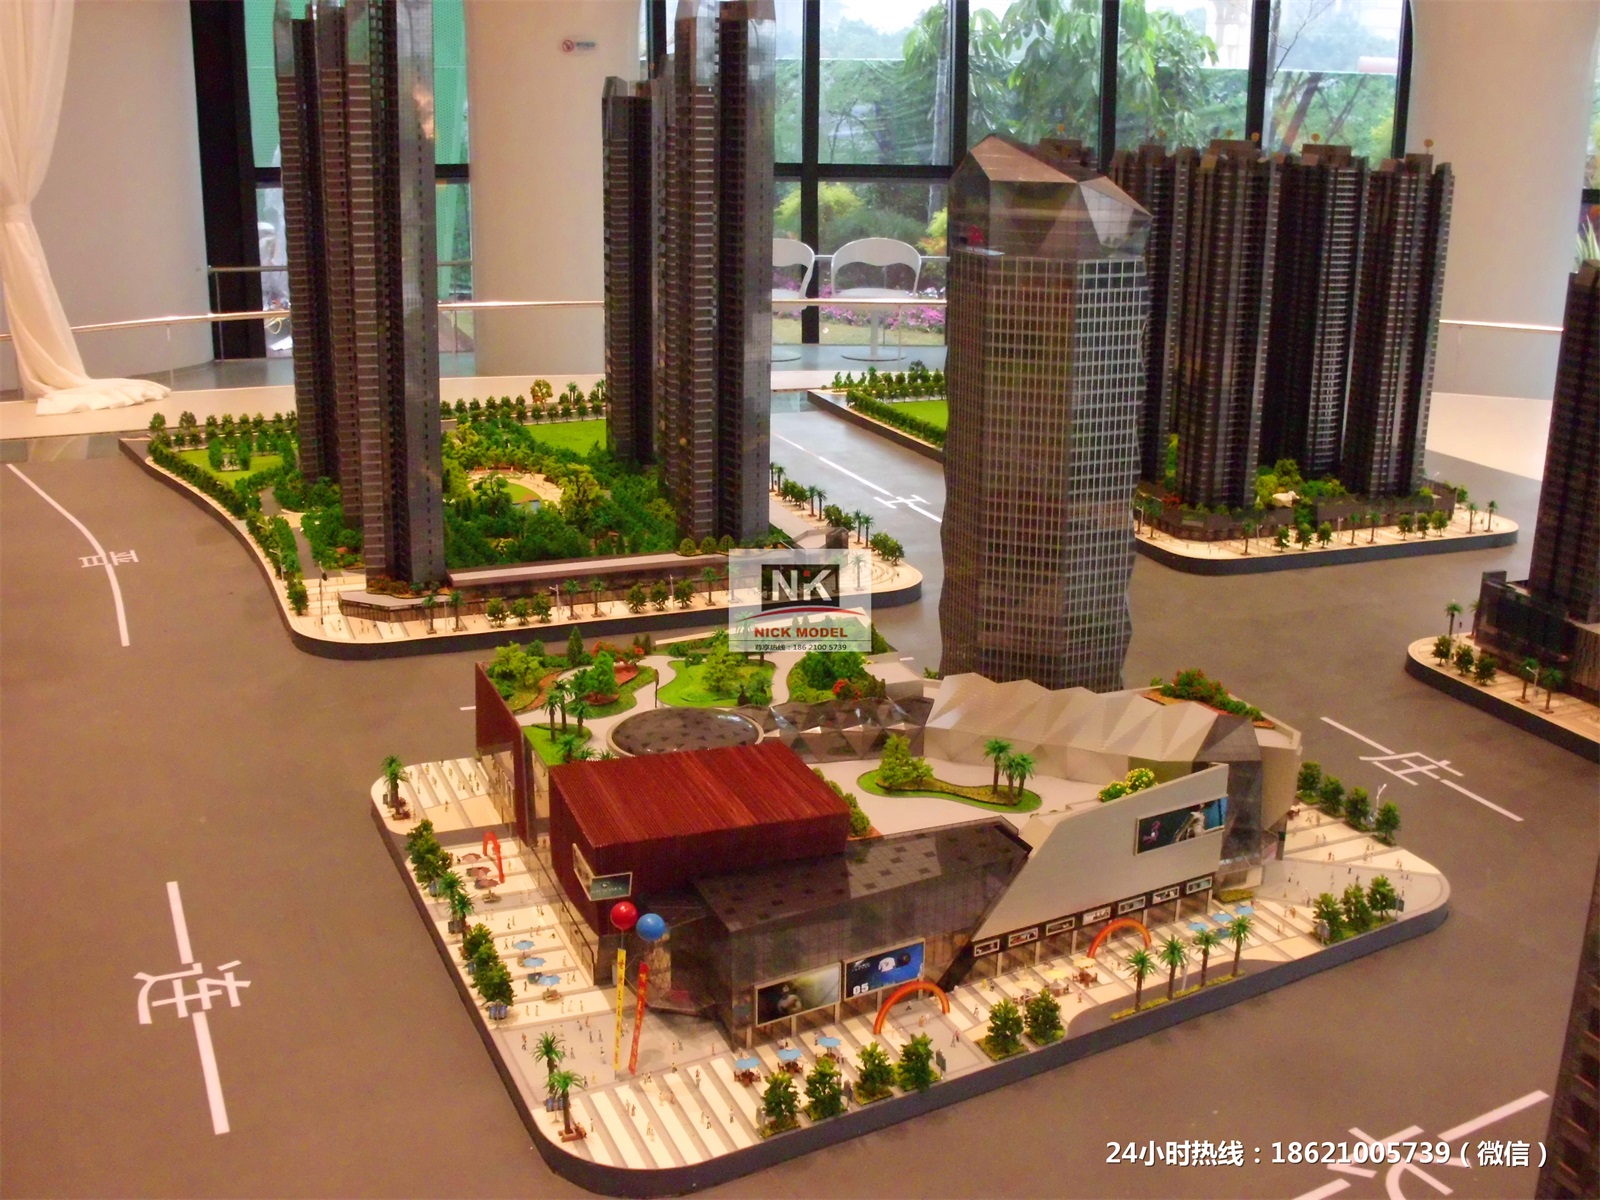 上海沙盤模型公司